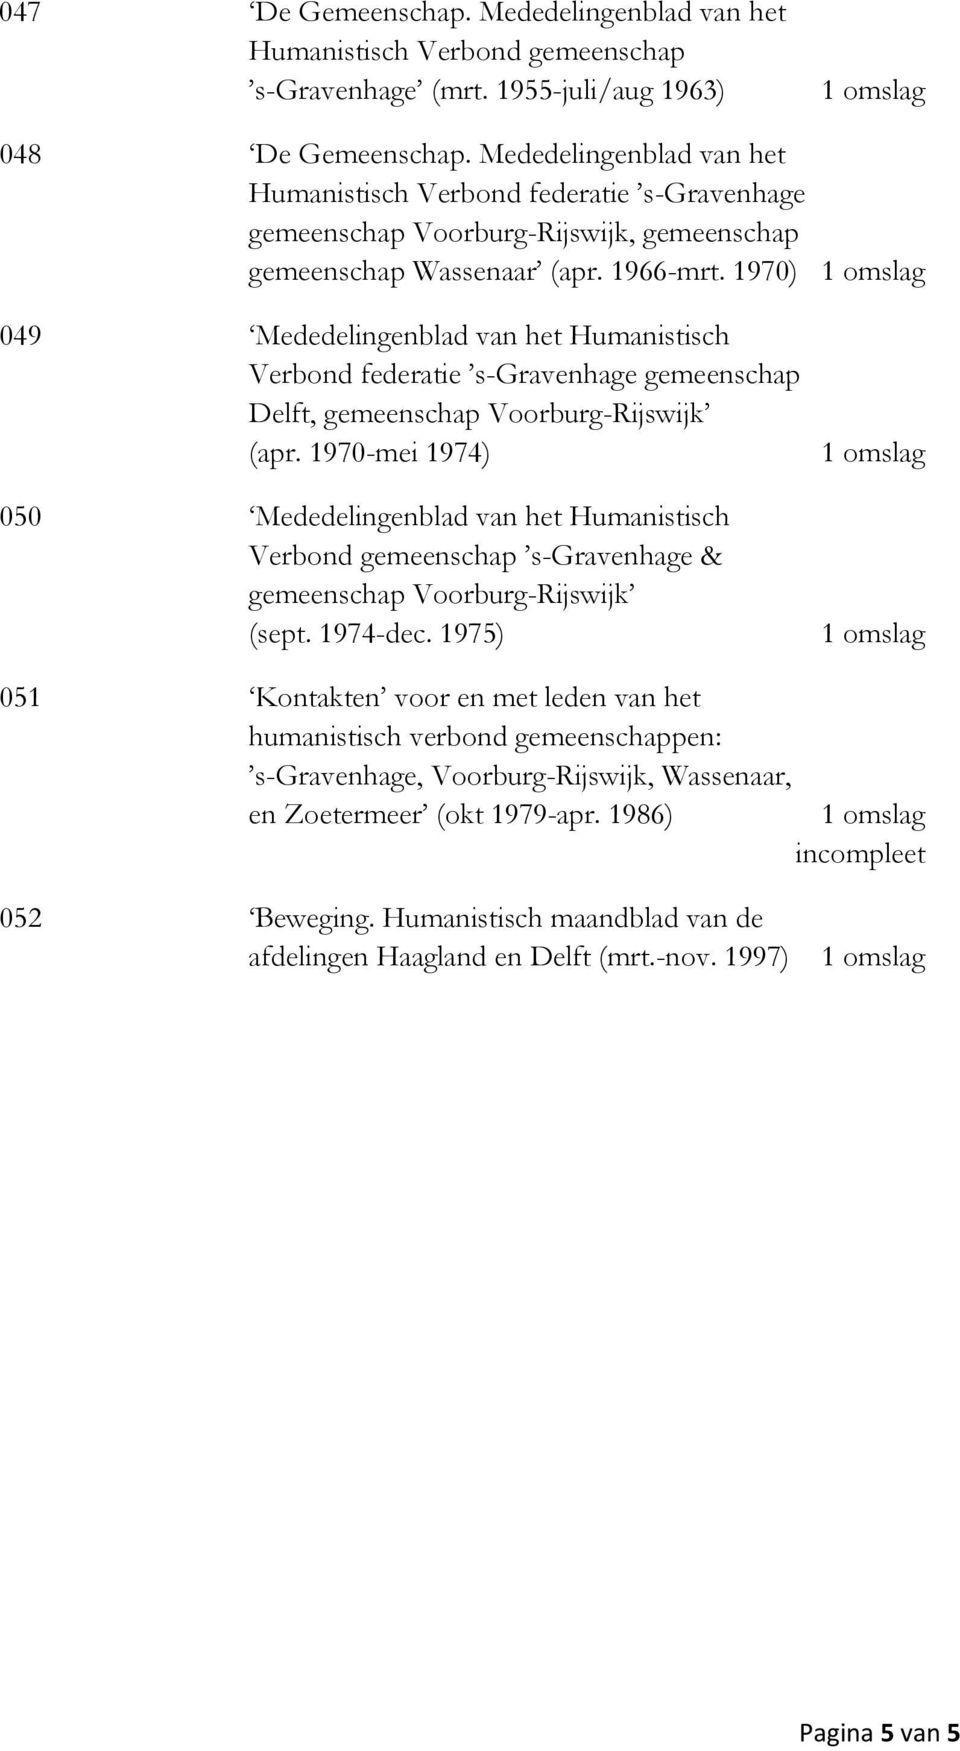 1970) 049 Mededelingenblad van het Humanistisch Verbond federatie s-gravenhage gemeenschap Delft, gemeenschap Voorburg-Rijswijk (apr.